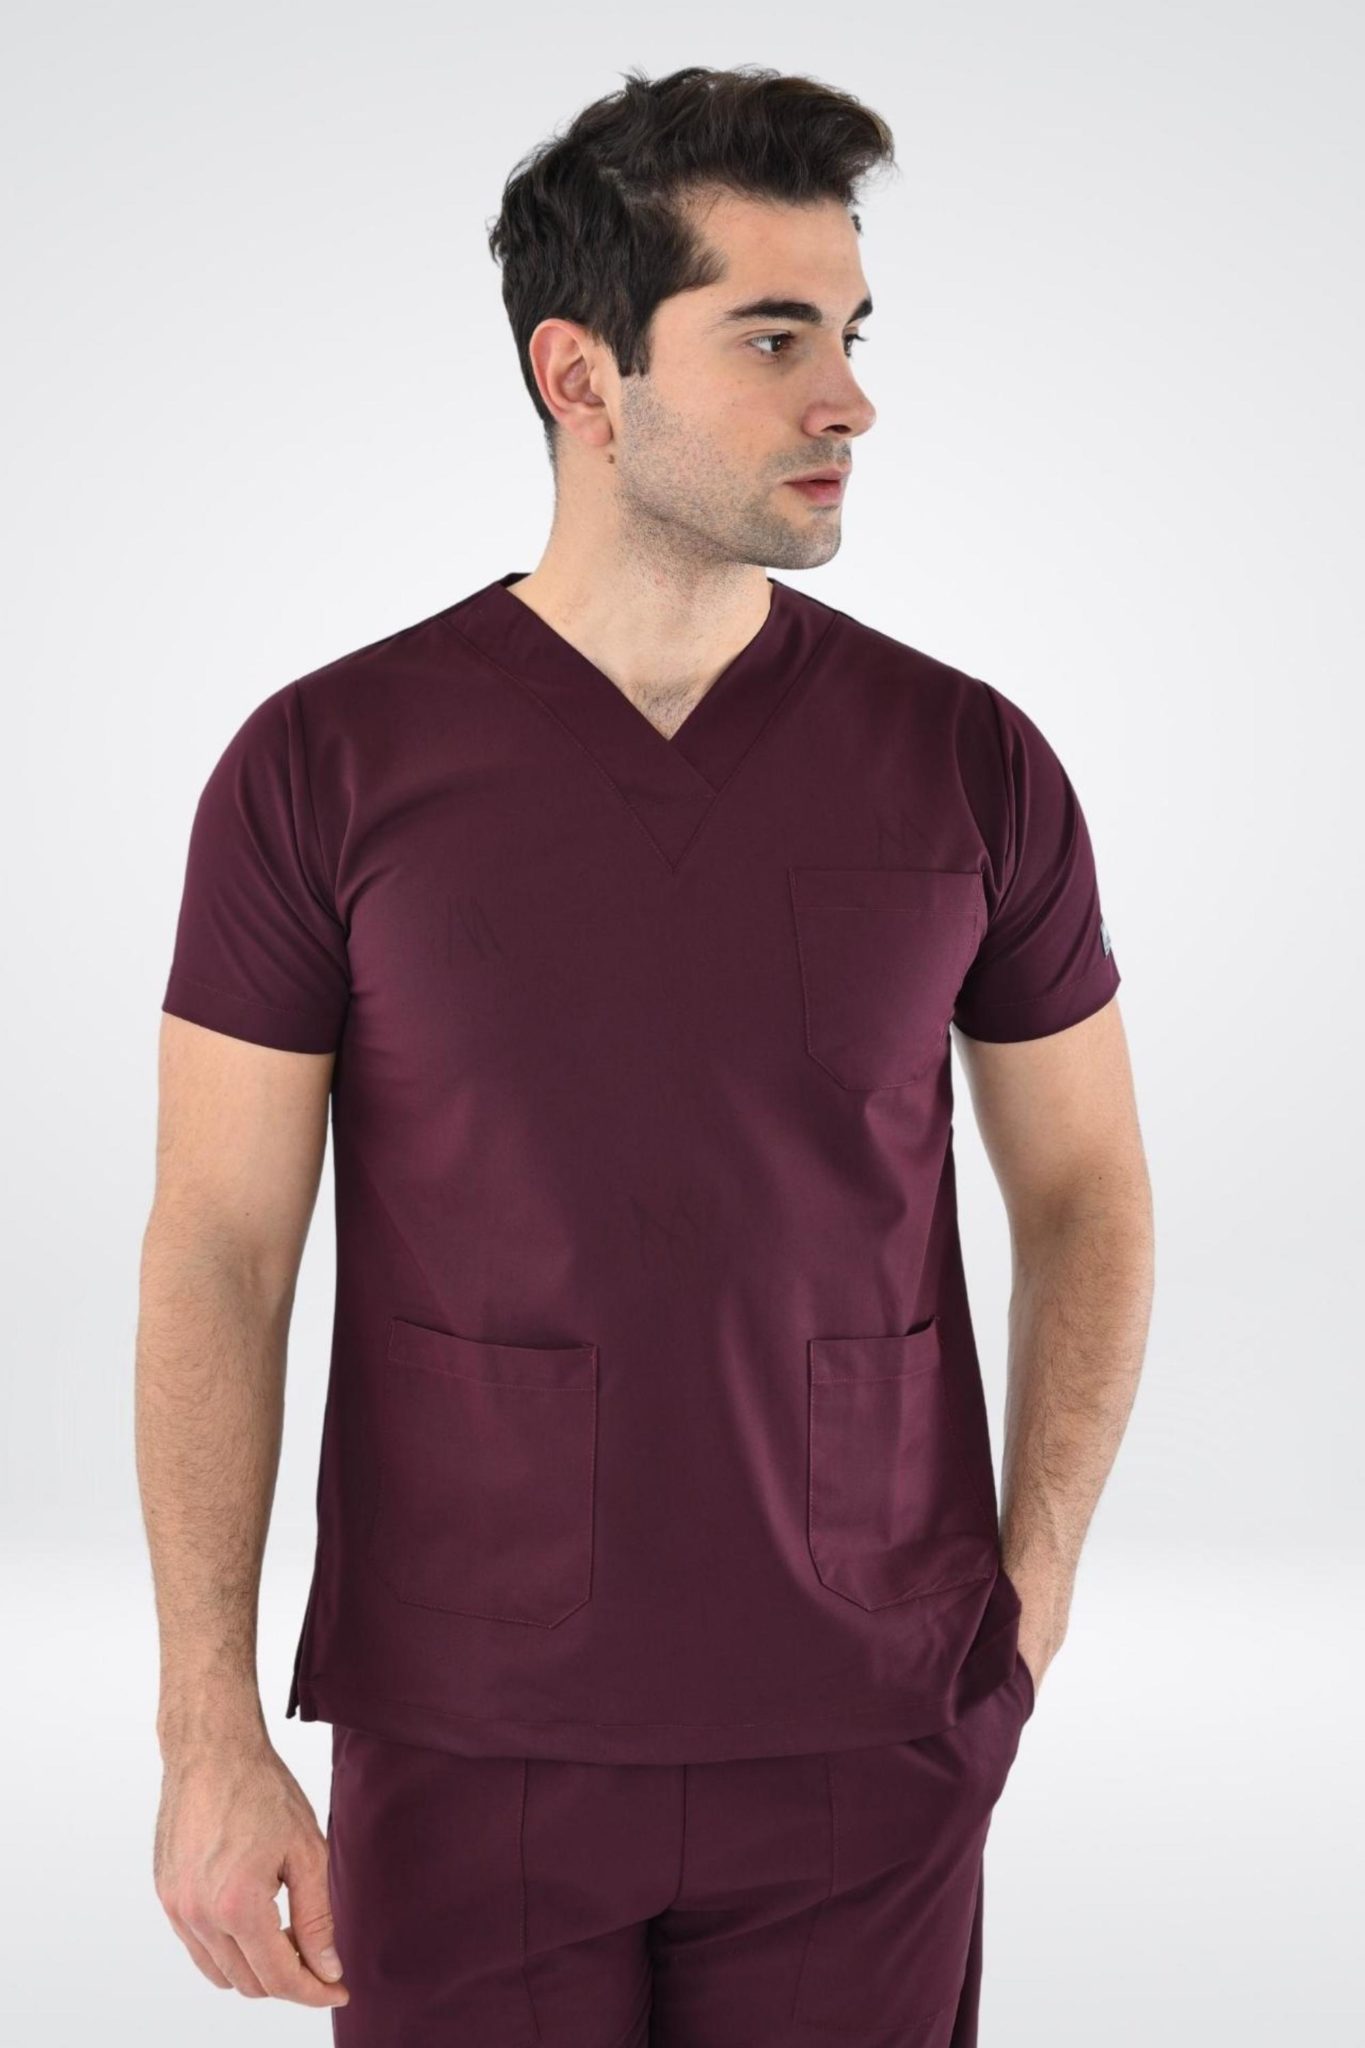 Un homme portant une tunique médicale bordeaux pour hommes, tenues médicales confort